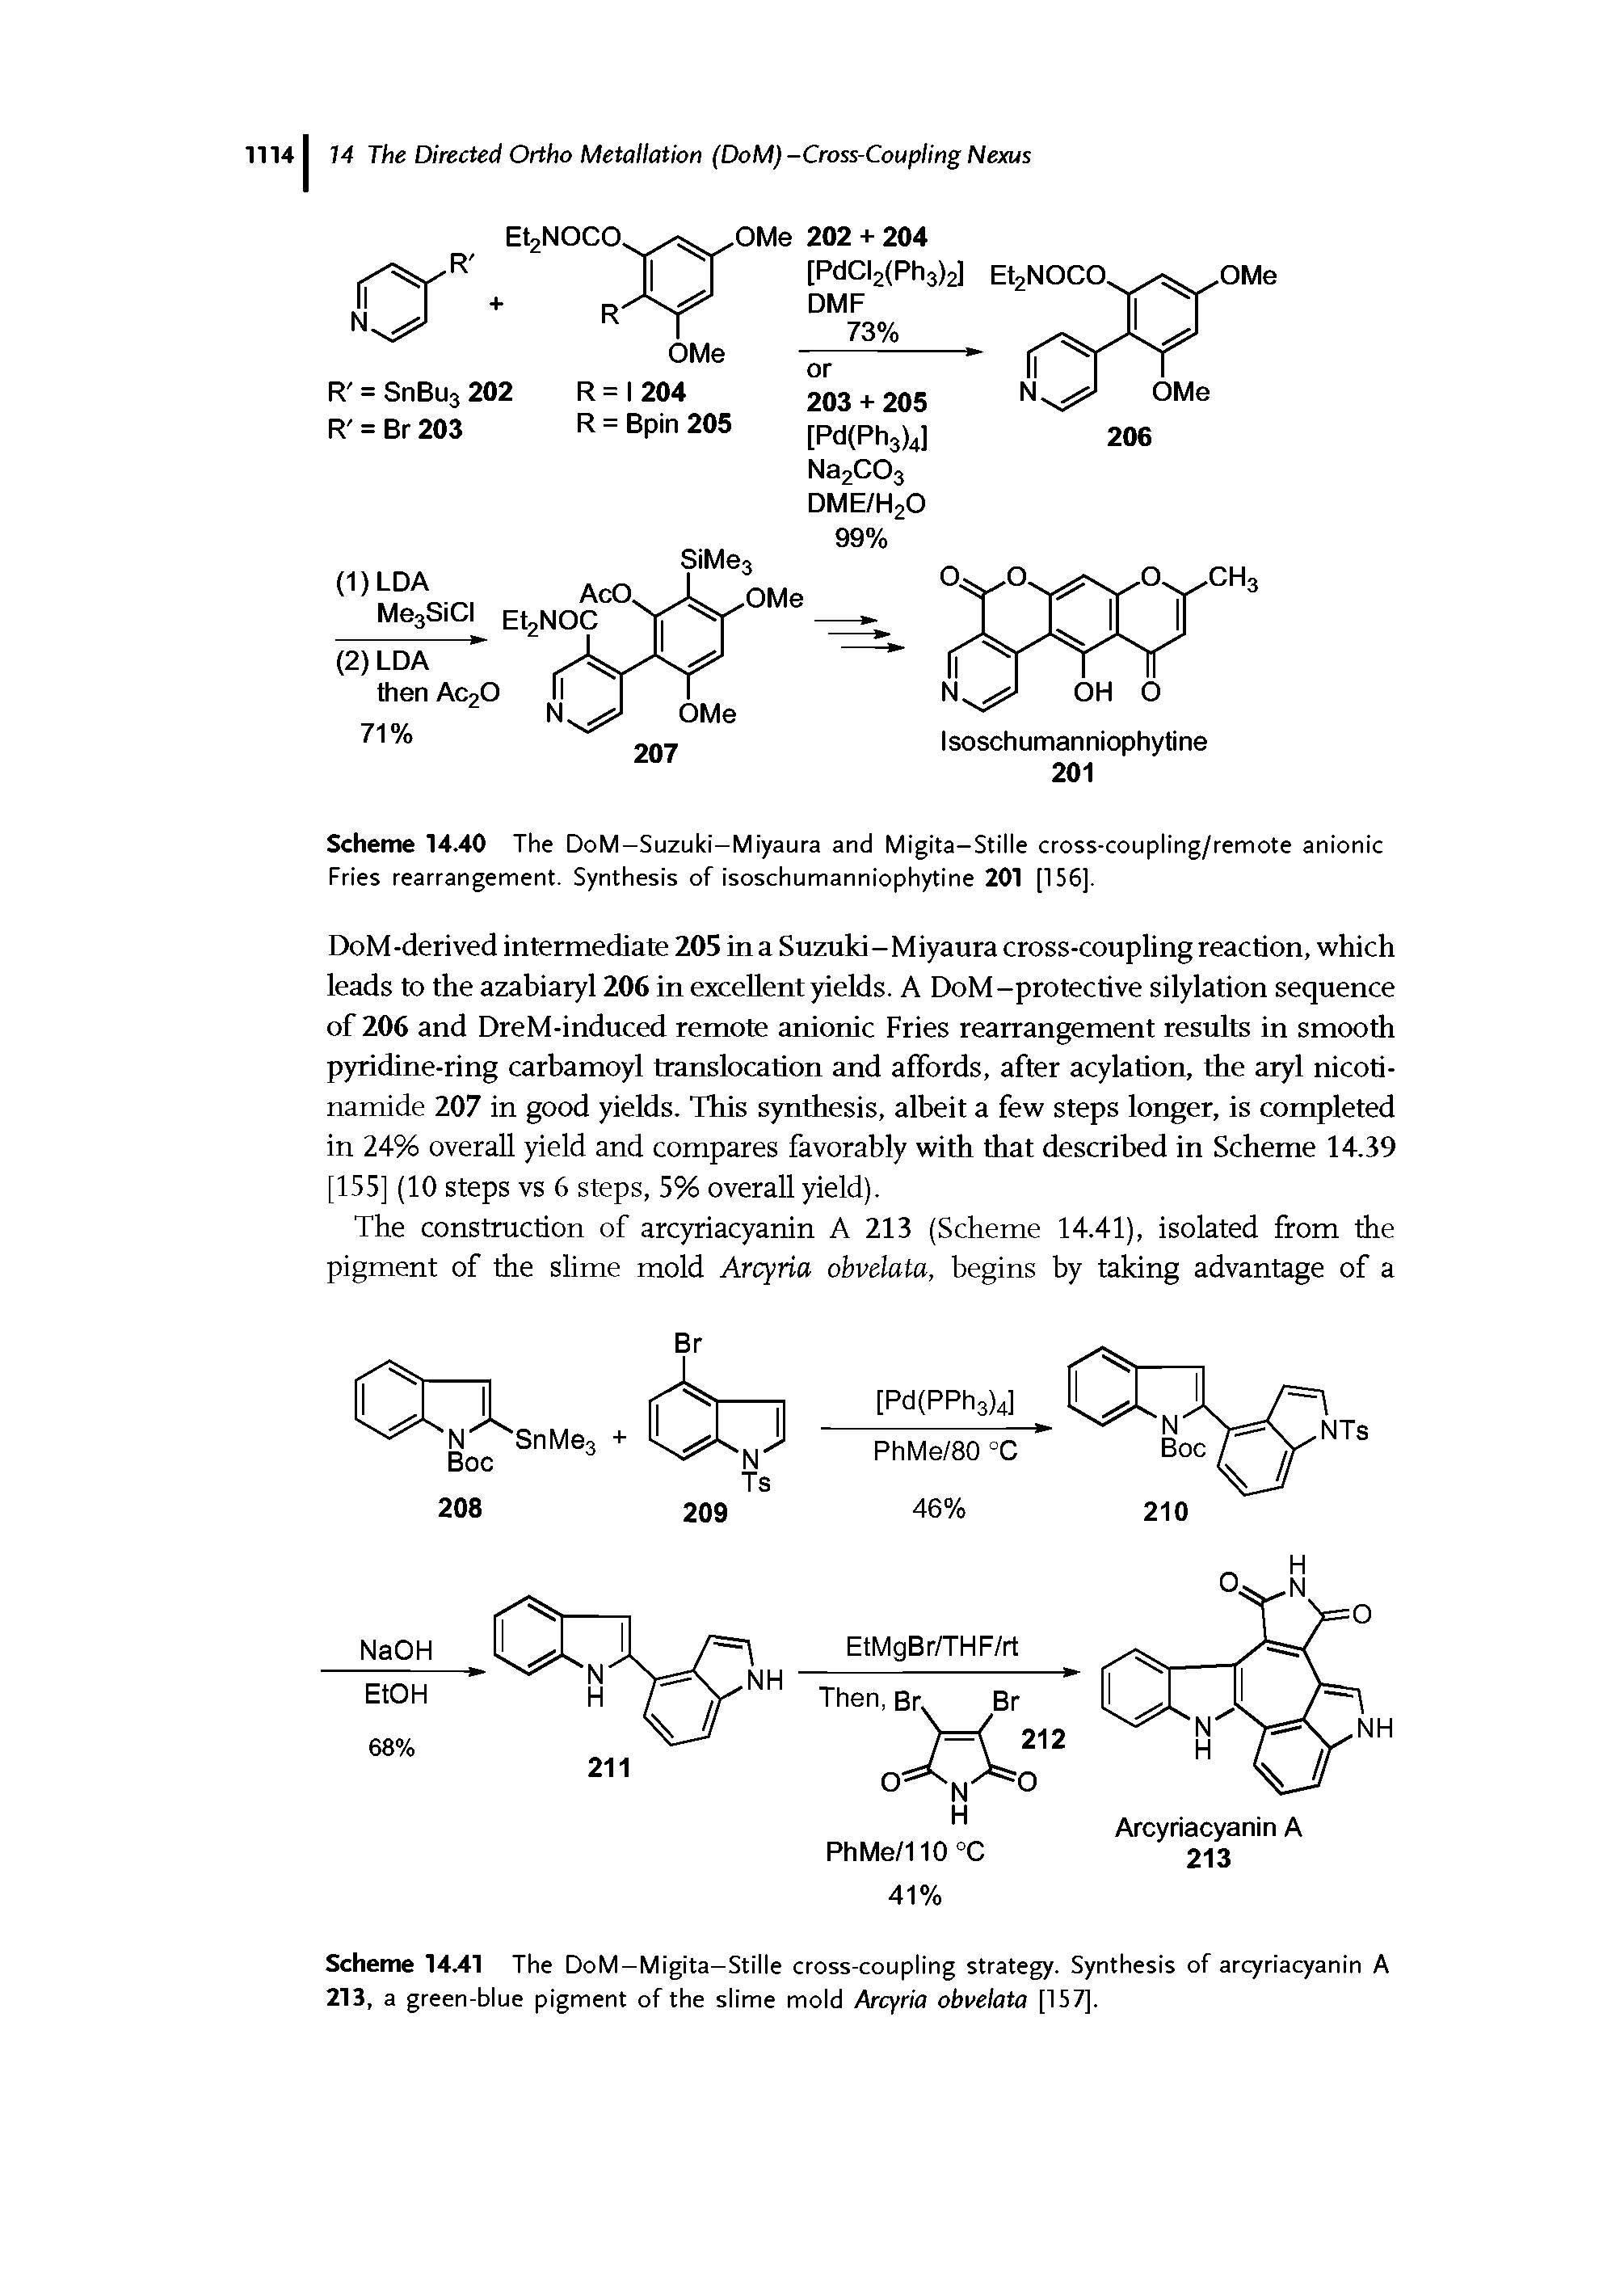 Scheme 14.40 The DoM-Suzuki-Miyaura and Migita-Stille cross-coupling/remote anionic Fries rearrangement. Synthesis of isoschumanniophytine 201 (156).